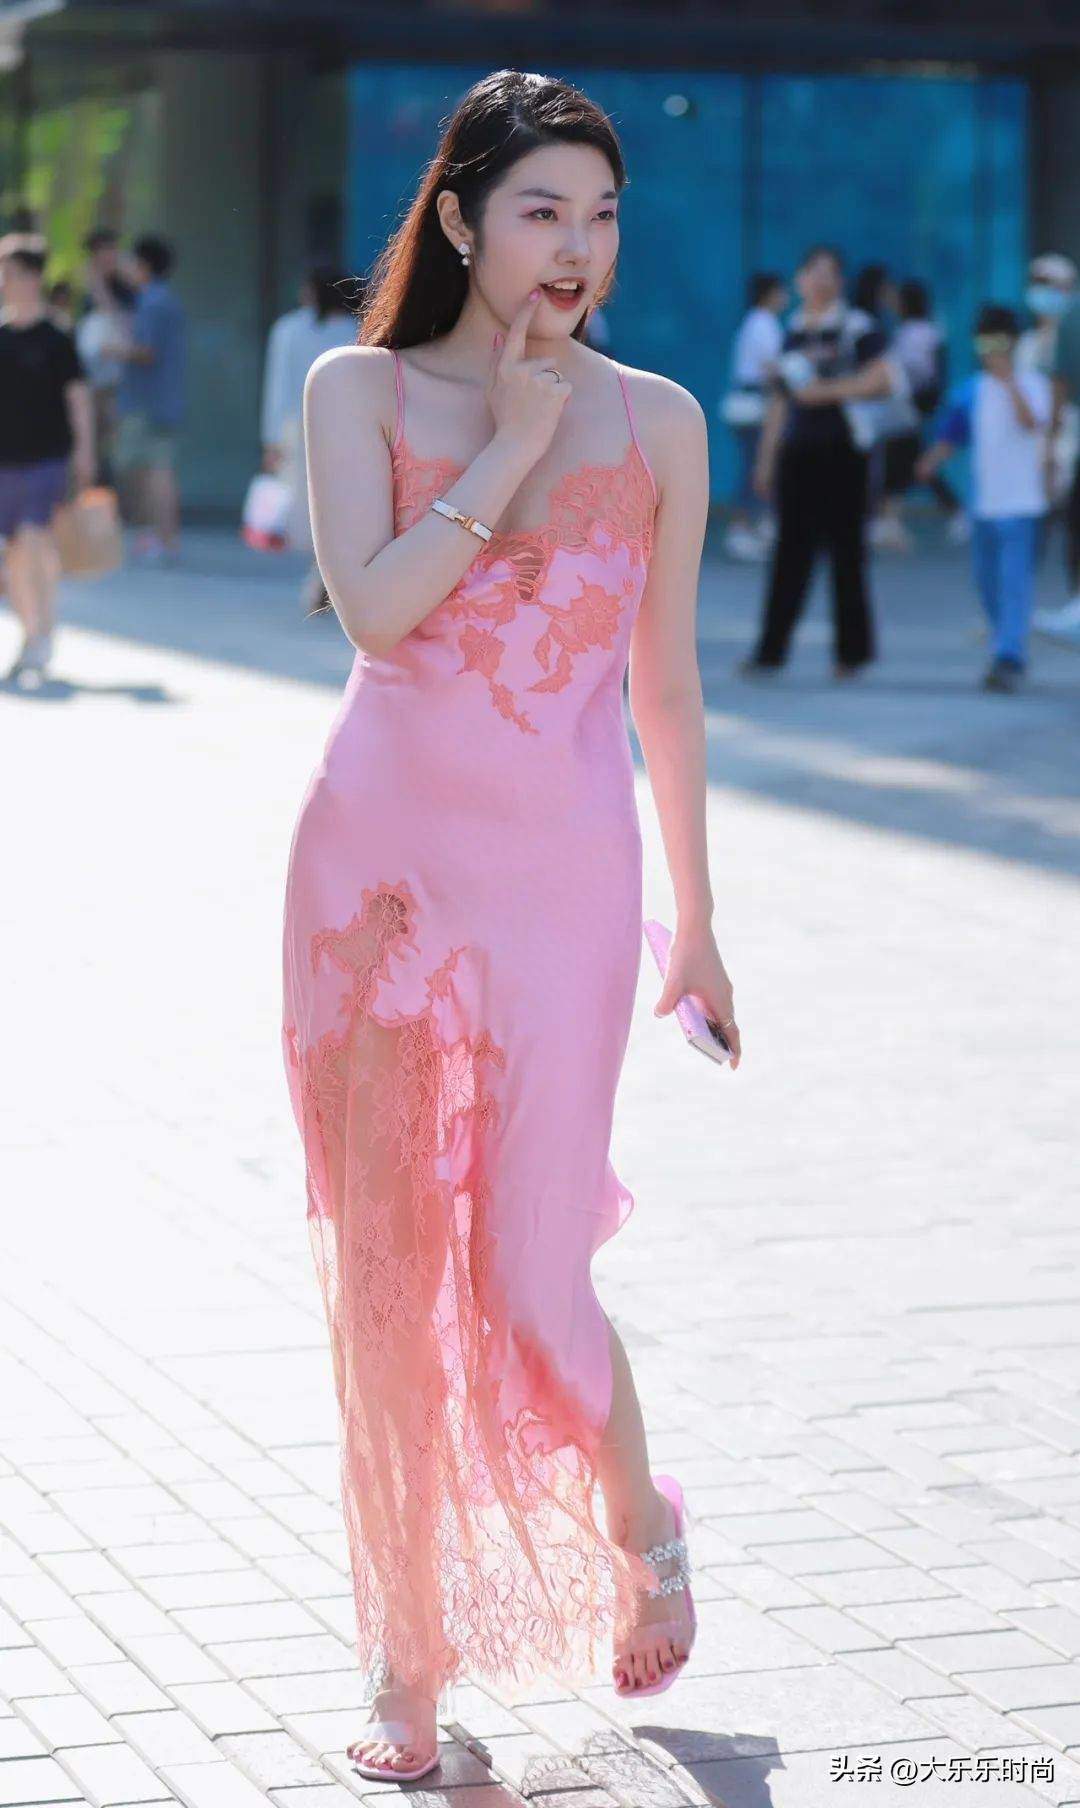 Cô nàng này khiến nhiều người trên phố ngoái nhìn khi diện váy satin phối ren khoe vóc dáng đẹp.